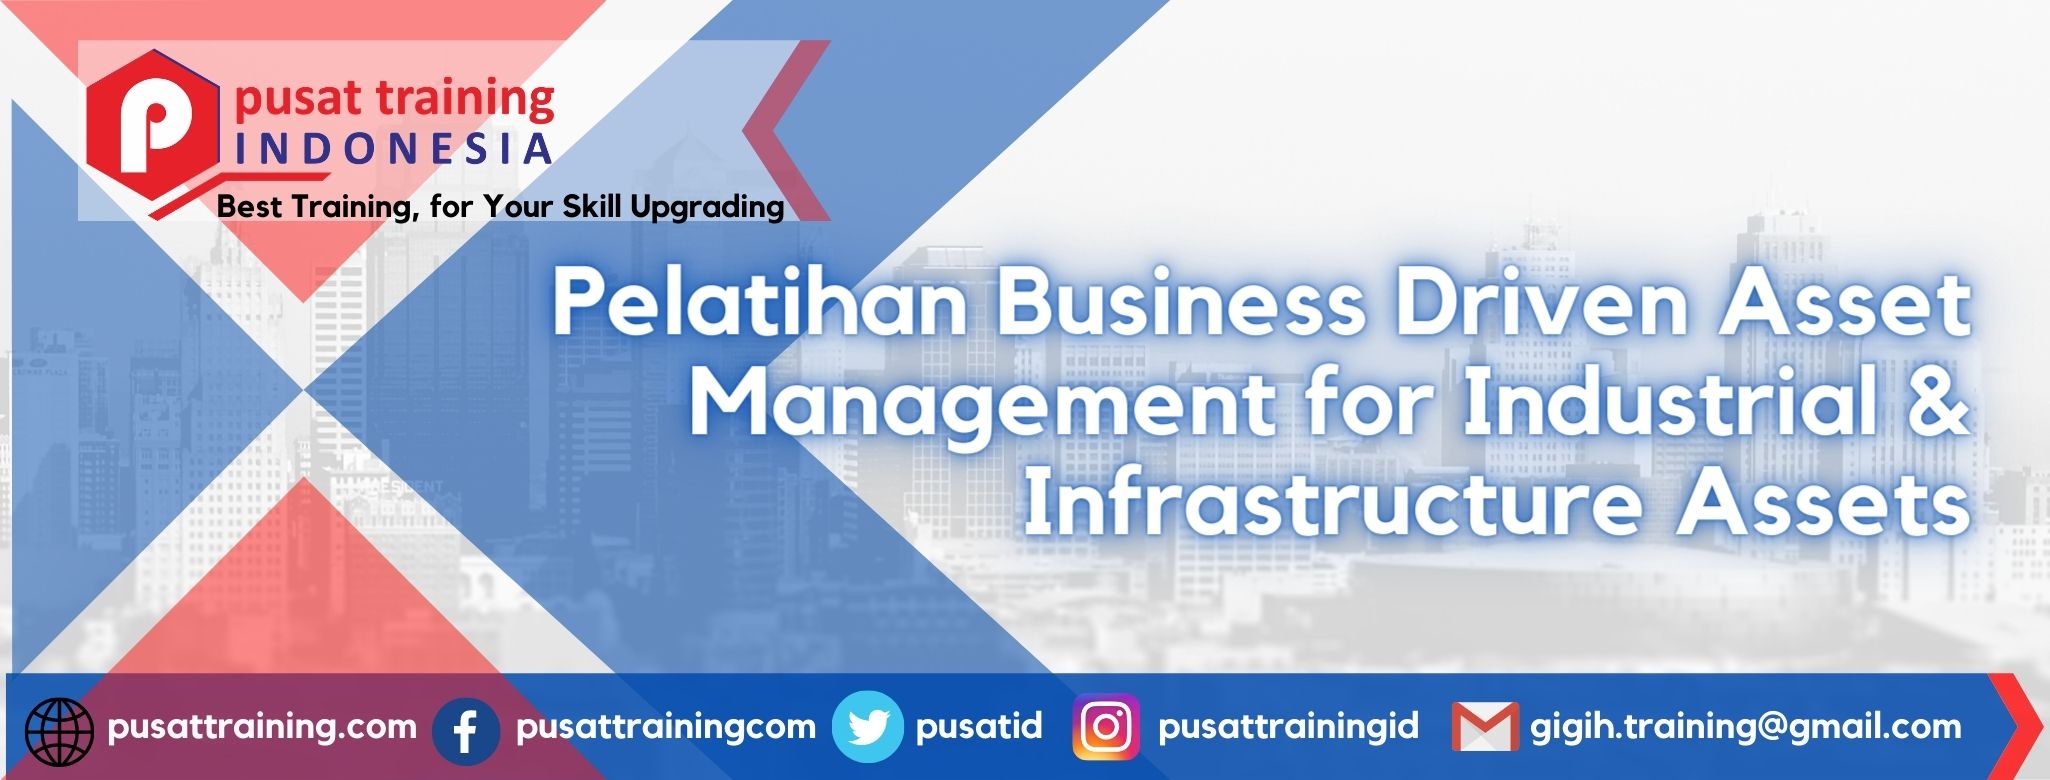 Pelatihan Business Driven Asset Management for Industrial & Infrastructure Assets